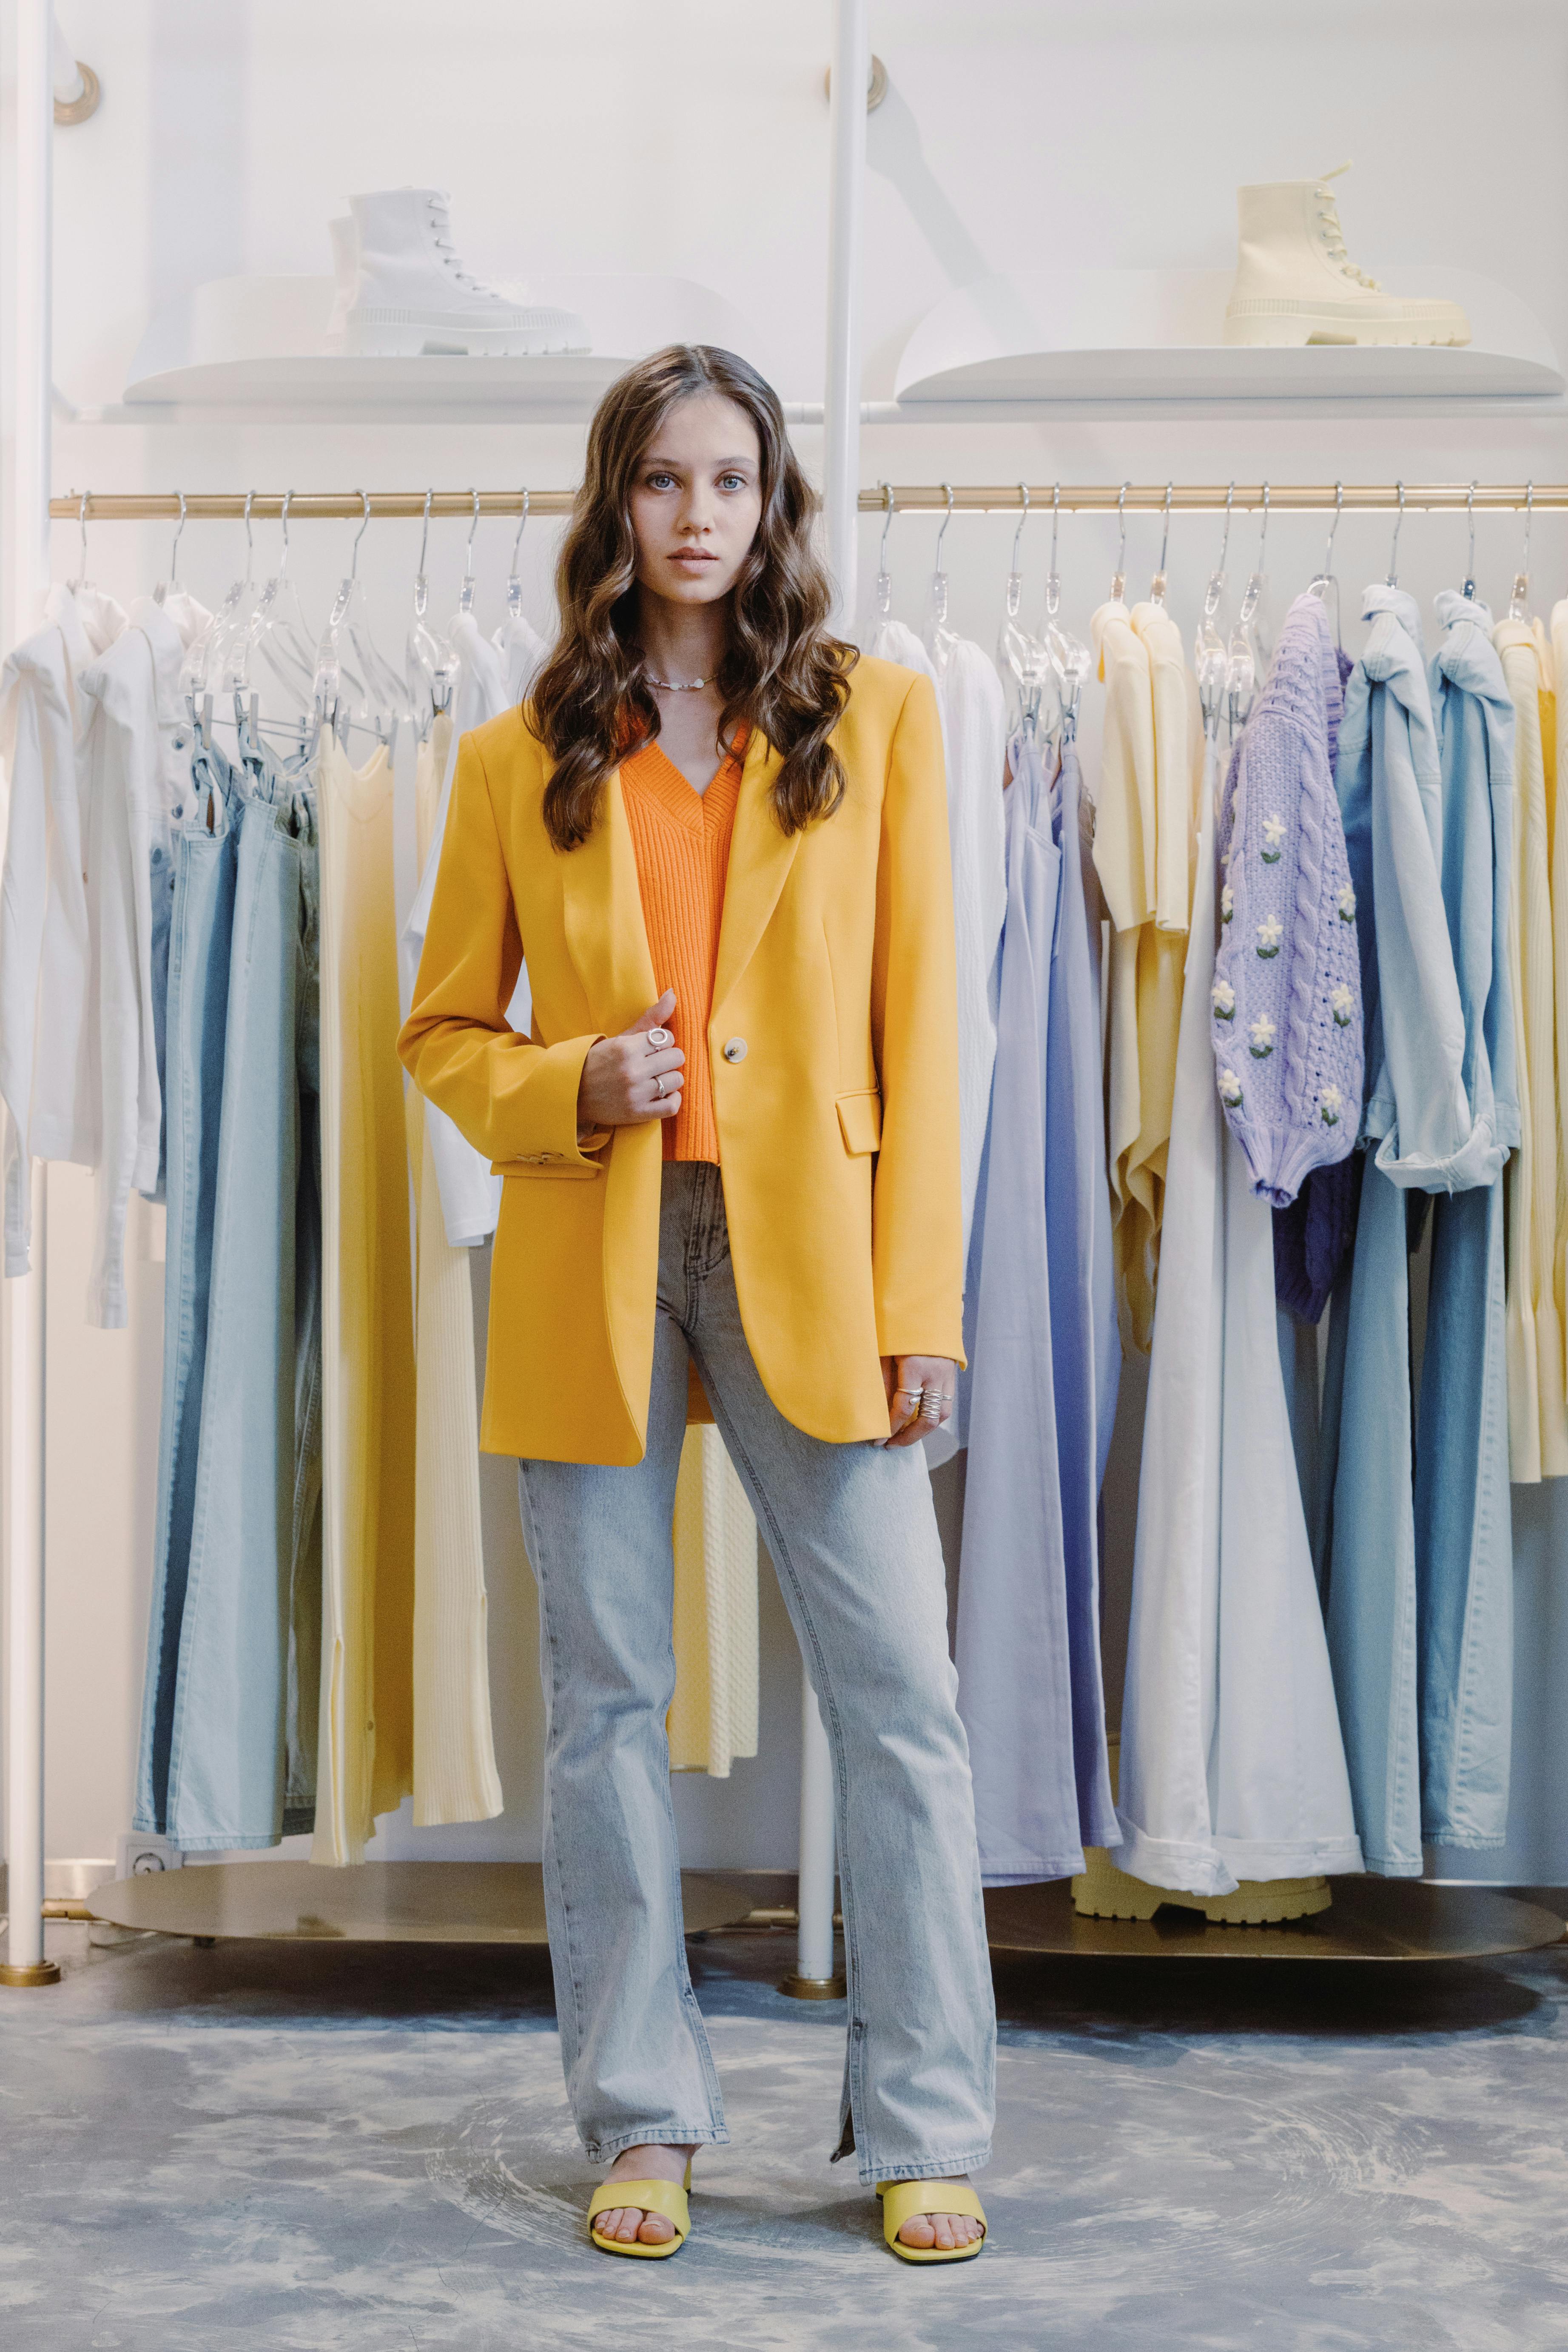 Una mujer disfrazada y posando en una tienda | Fuente: Pexels